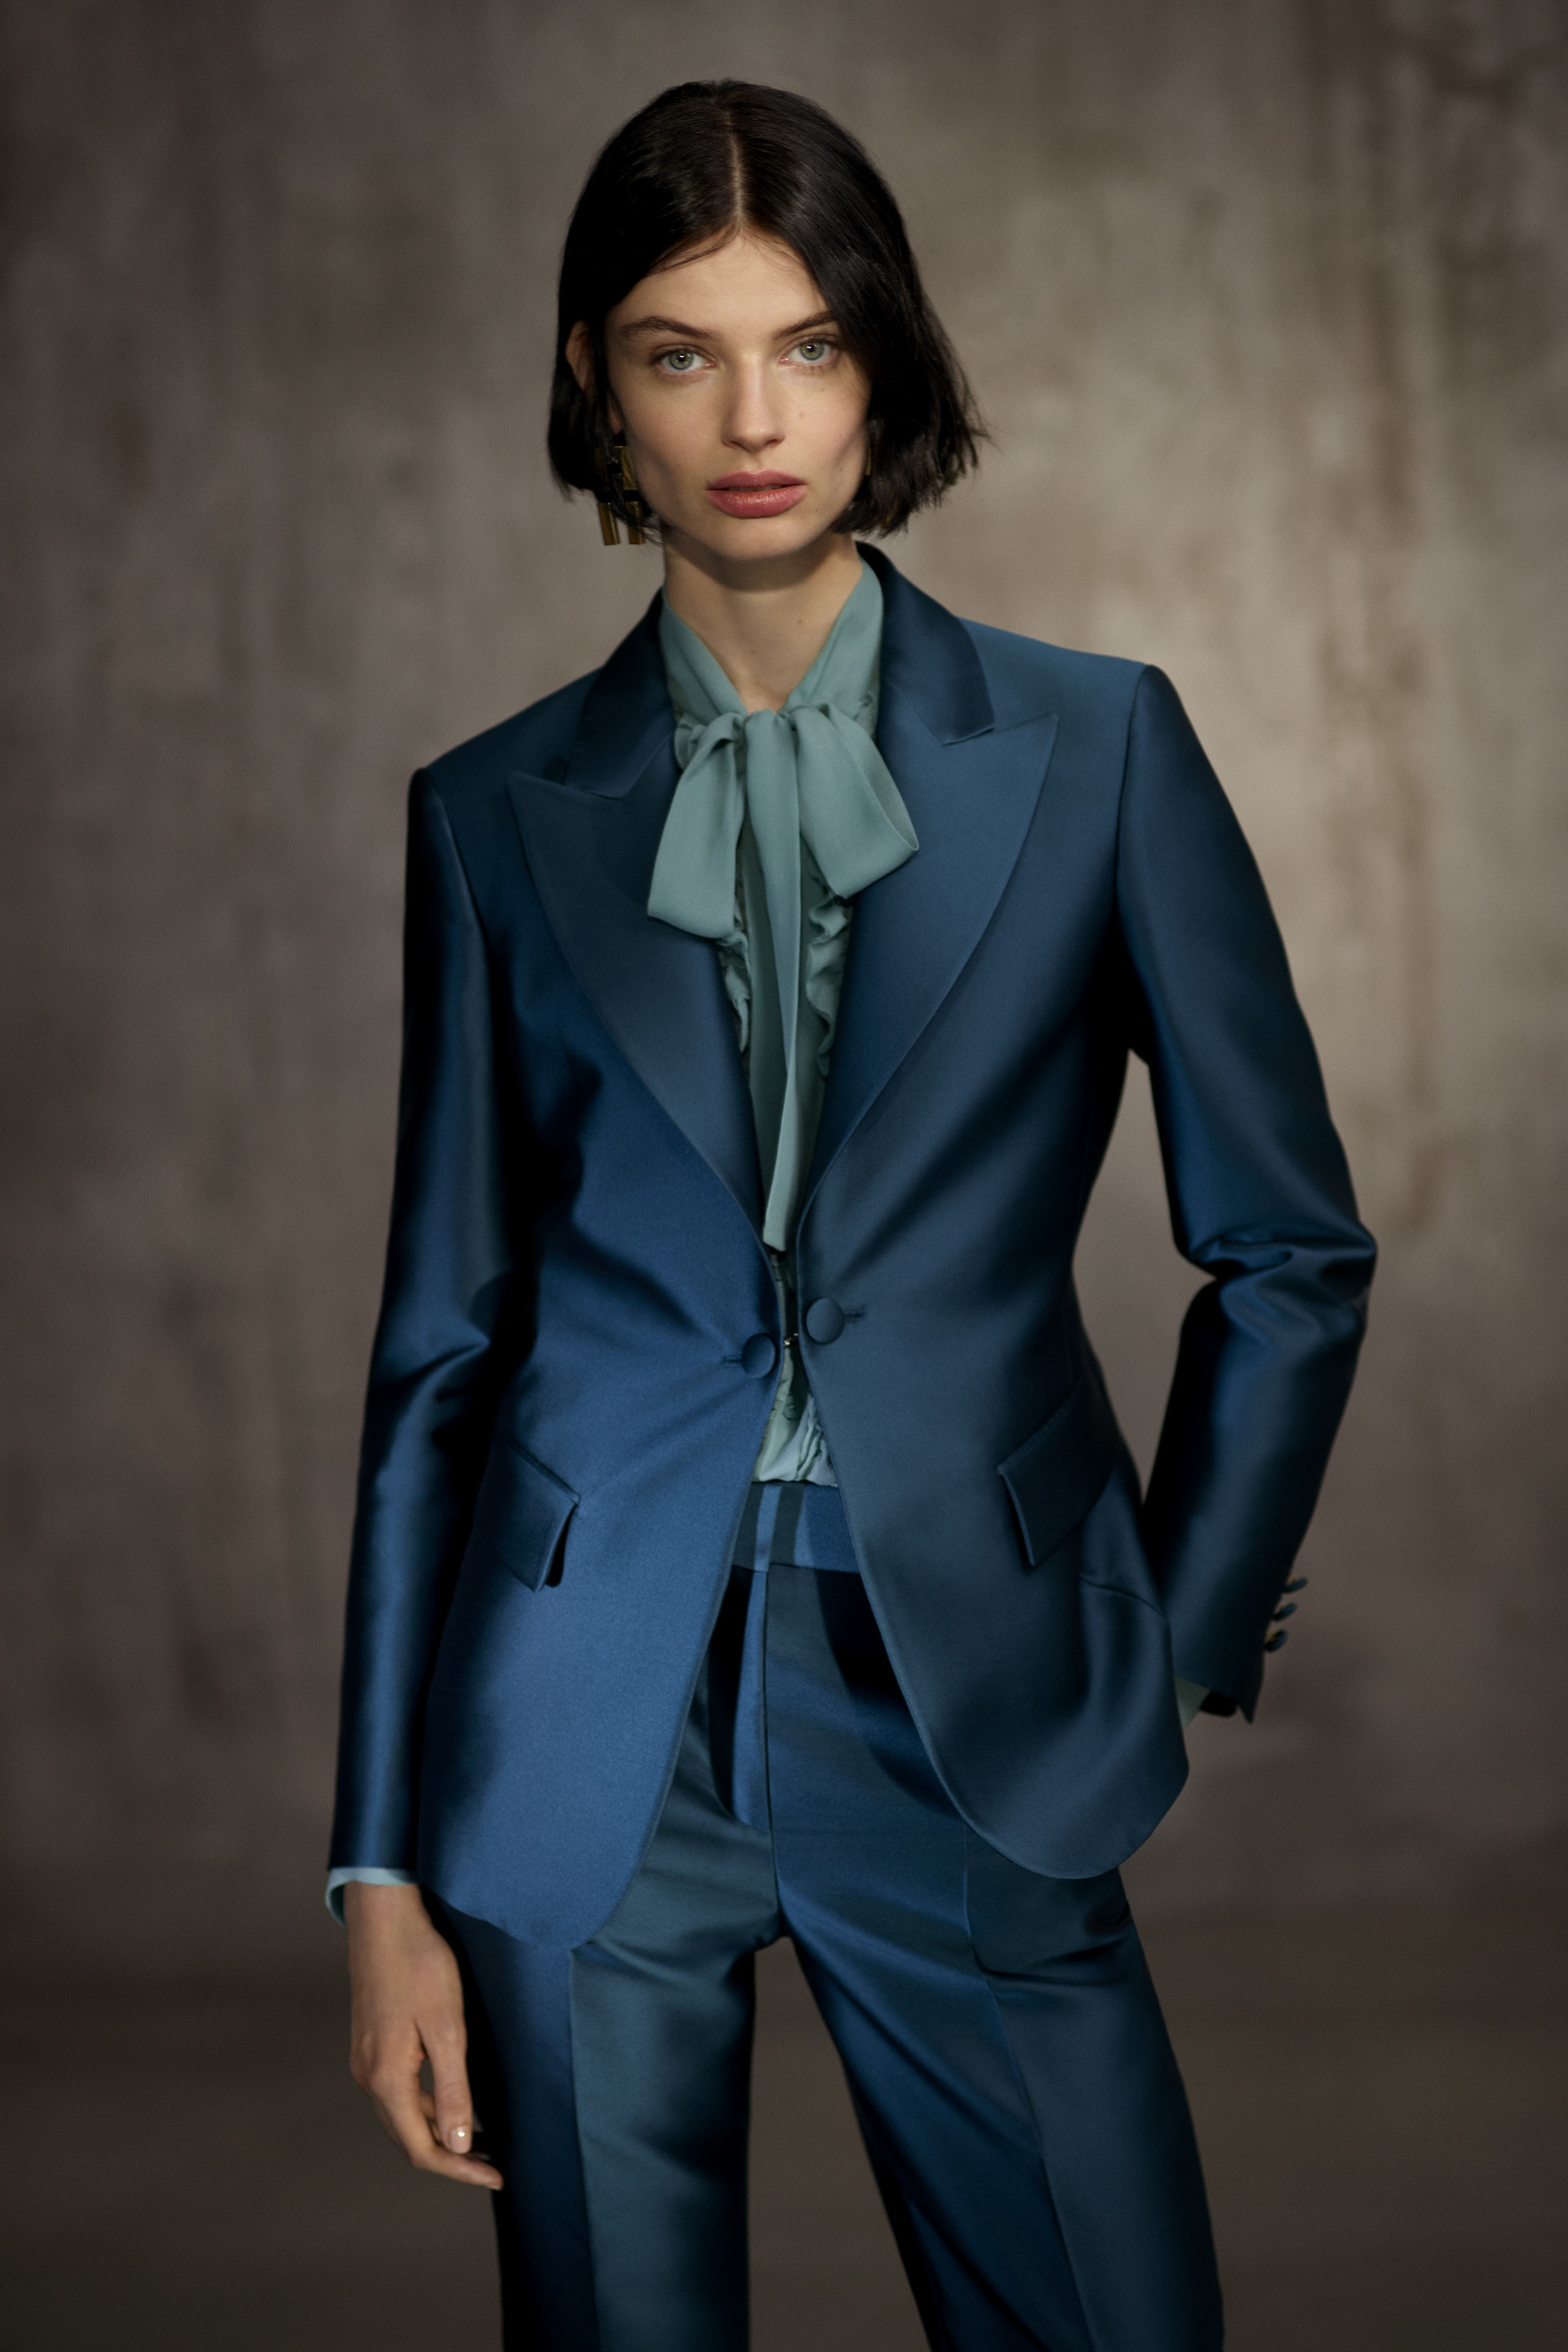 El azul es pura elegancia en este traje de Alberta Ferretti.